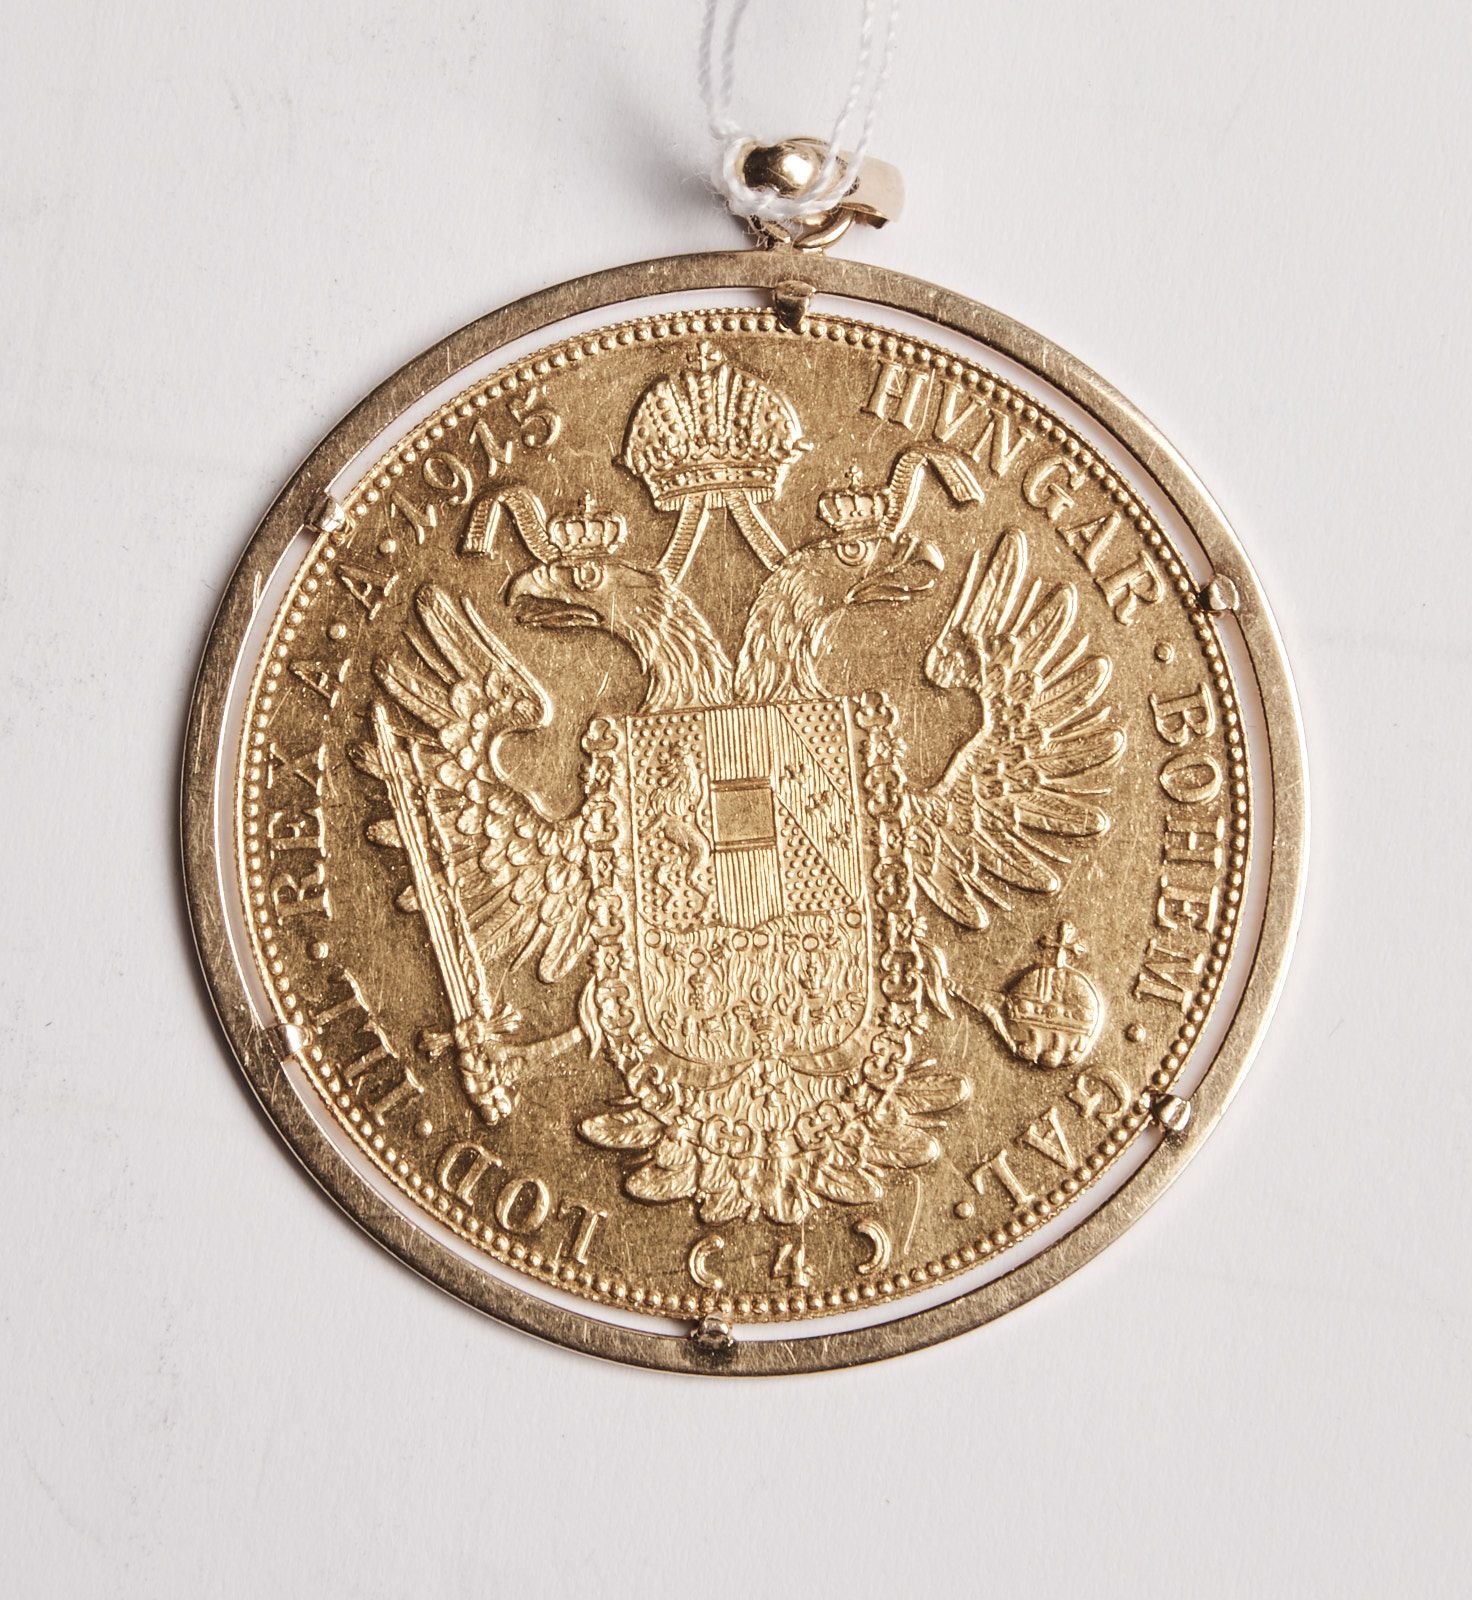 Null 40 Moneta da 4 ducati 1915, montata in oro, peso 17,2 g